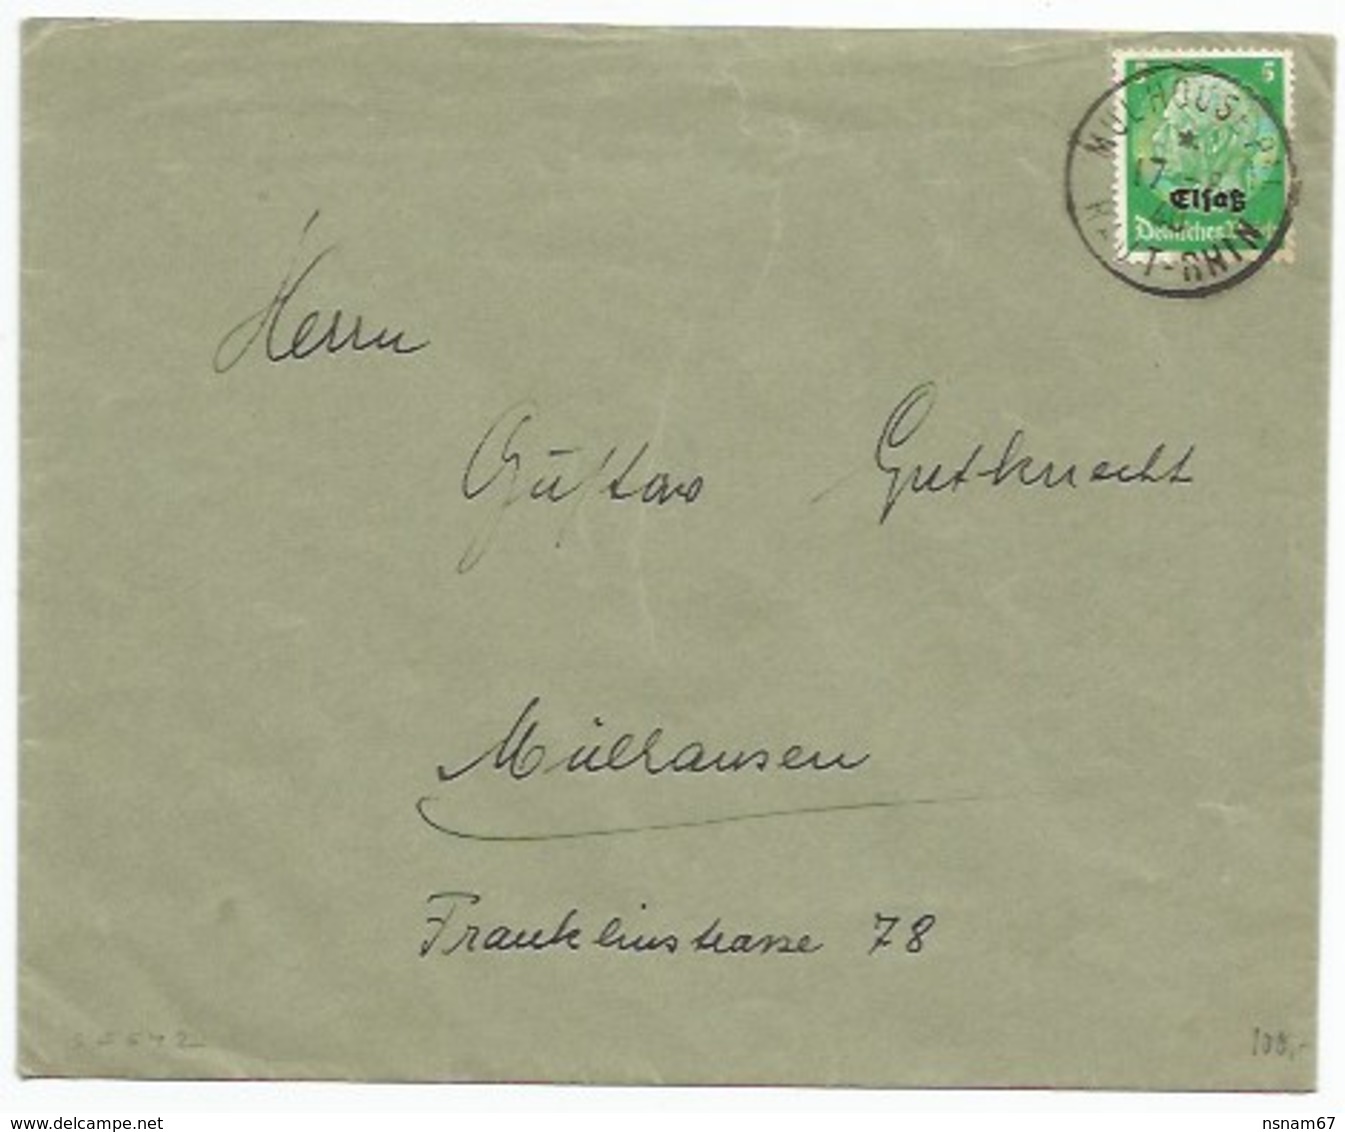 SK542 - MULHOUSE Pal - 17 Aout 1940 - Cachet FRANCAIS Sur Timbre ALLEMAND Hindenburg Surchargé Elsass - - Lettres & Documents